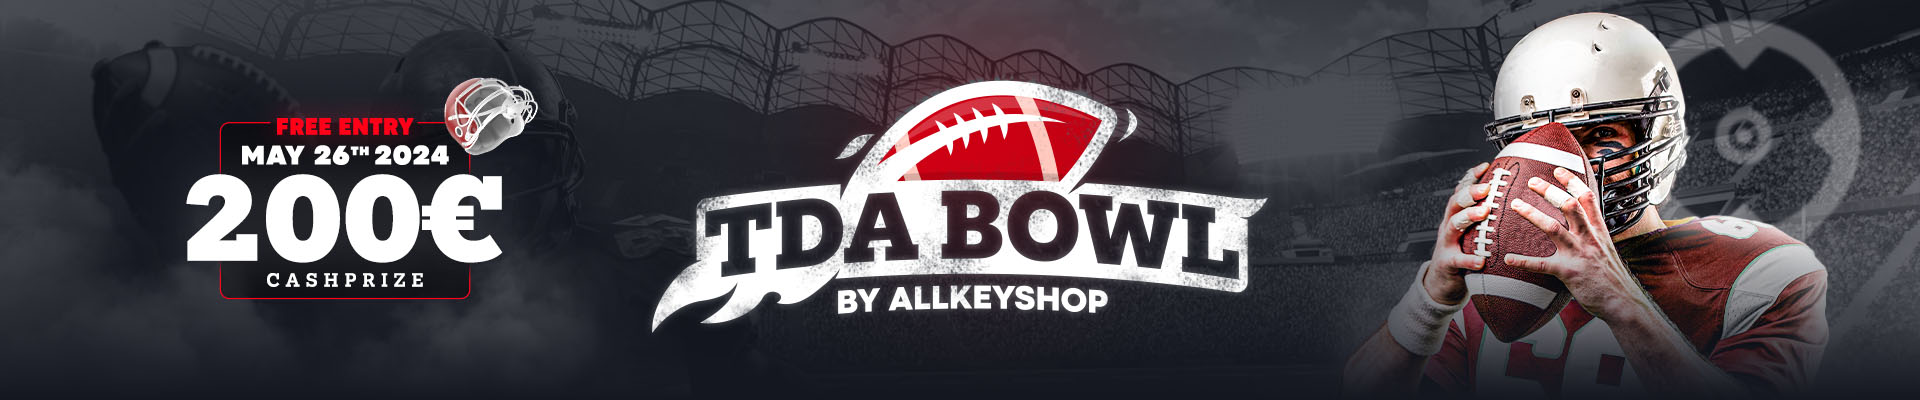 TDA Bowl by Allkeyshop